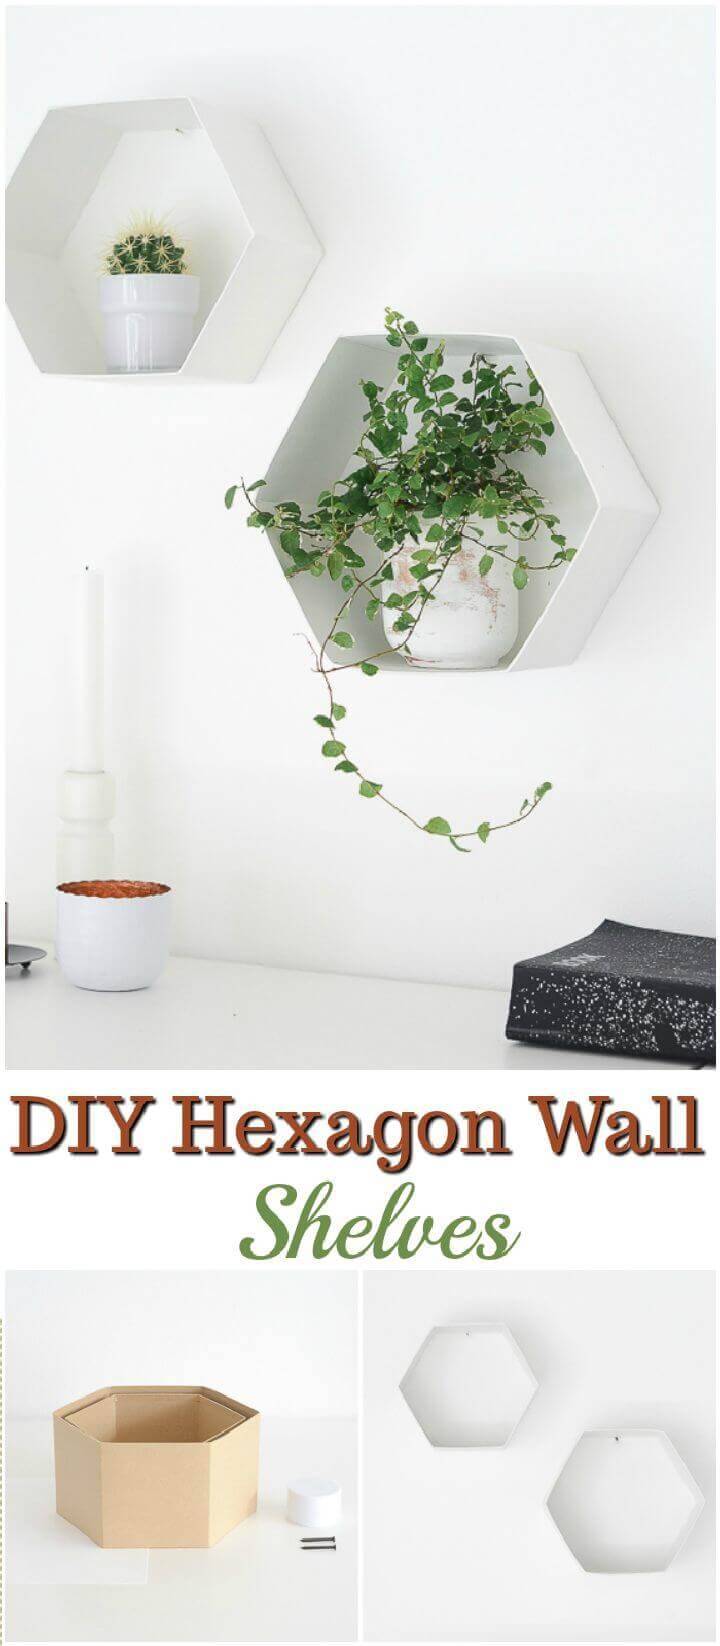 DIY Hexagon Wall Shelves